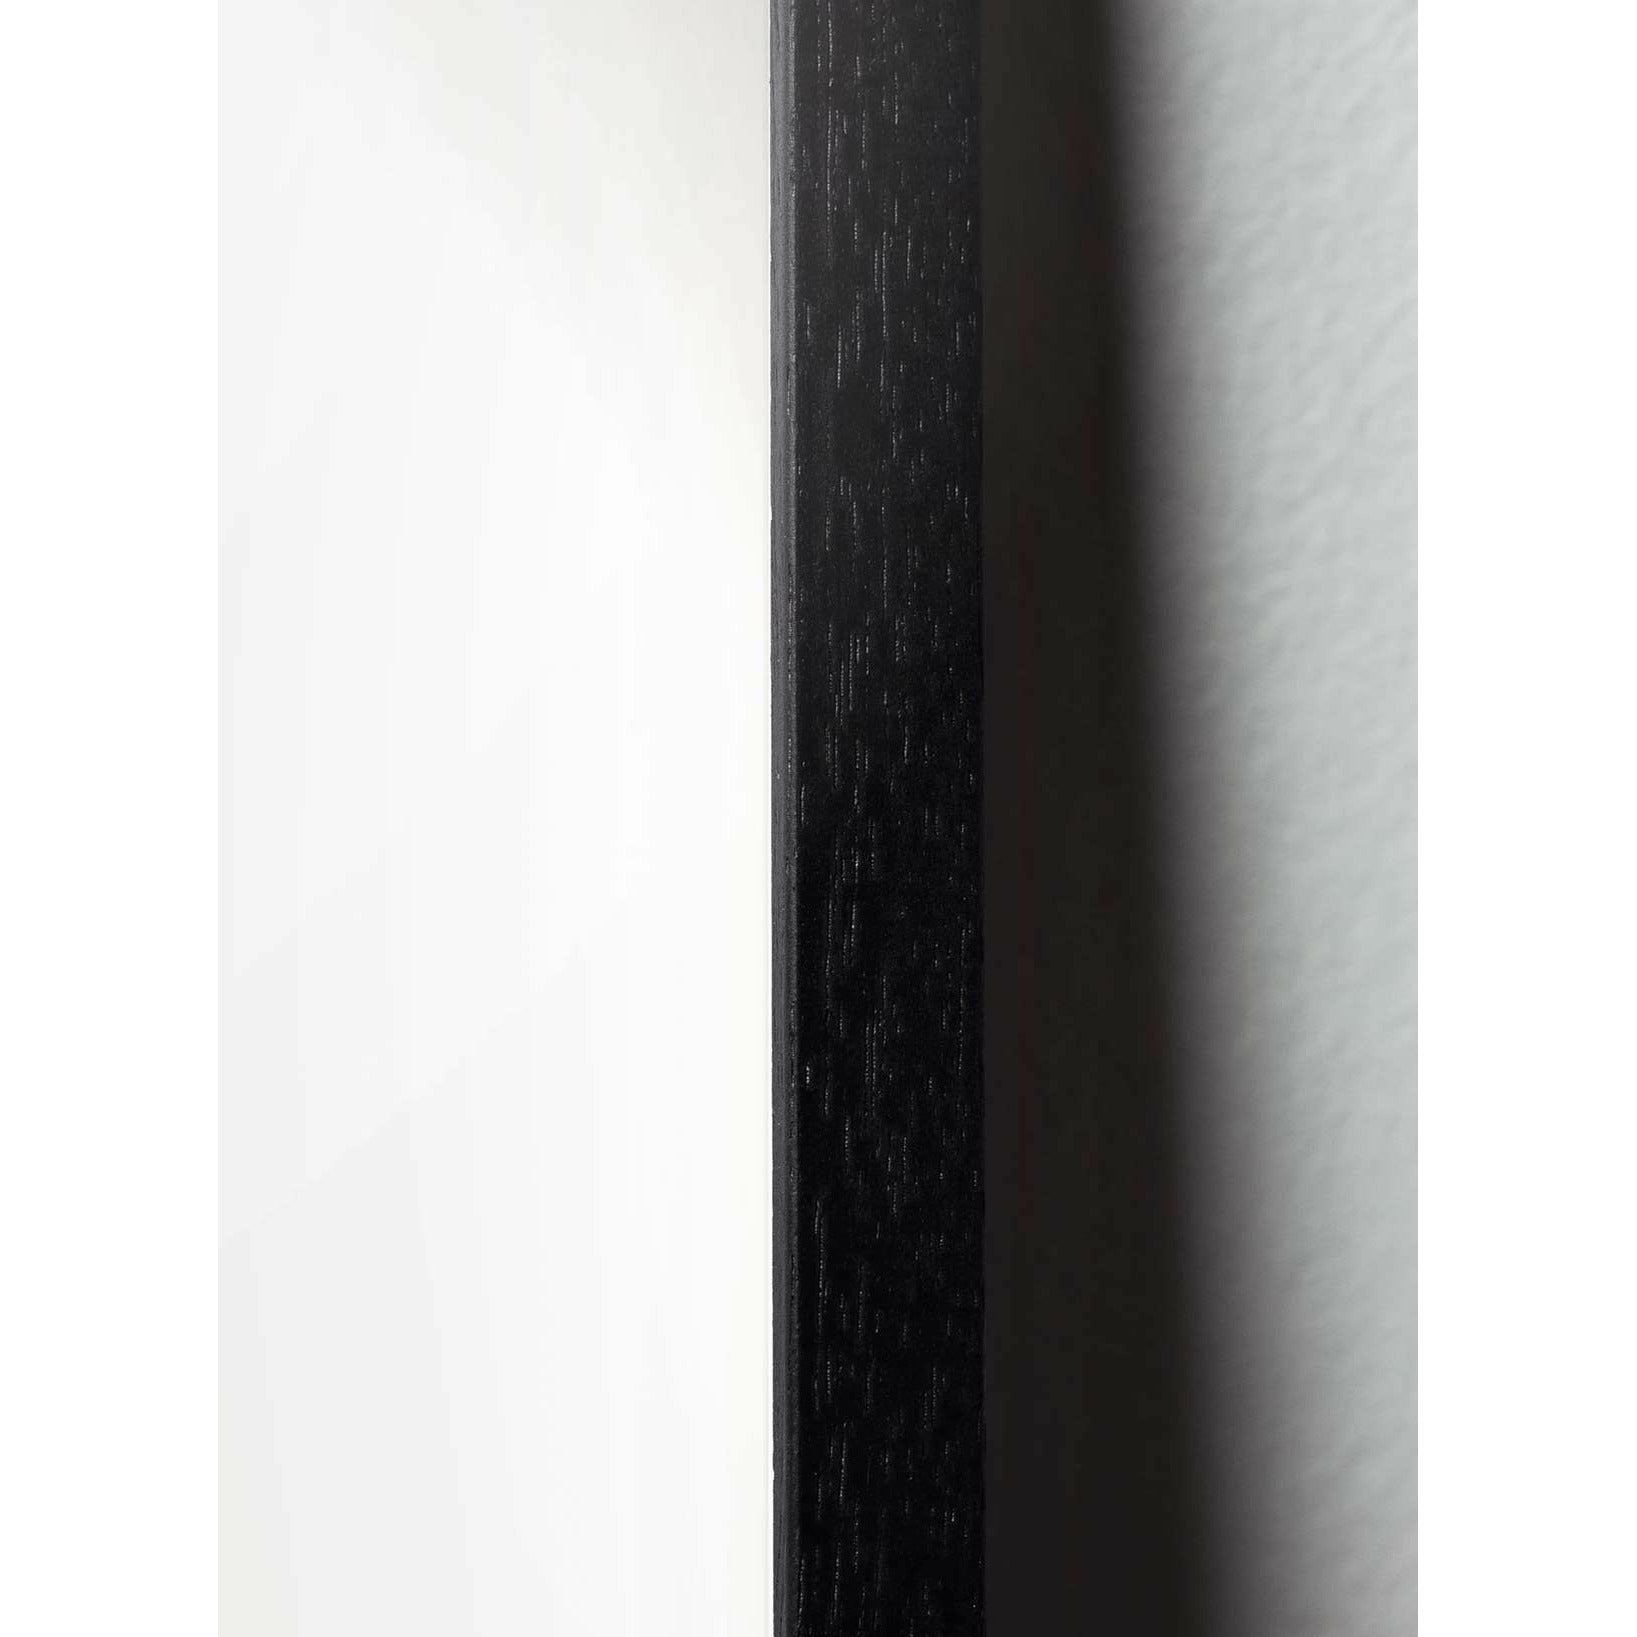 Brainchild Pine Cone Classic Poster, Rahmen aus schwarz lackiertem Holz 30x40 cm, roter Hintergrund